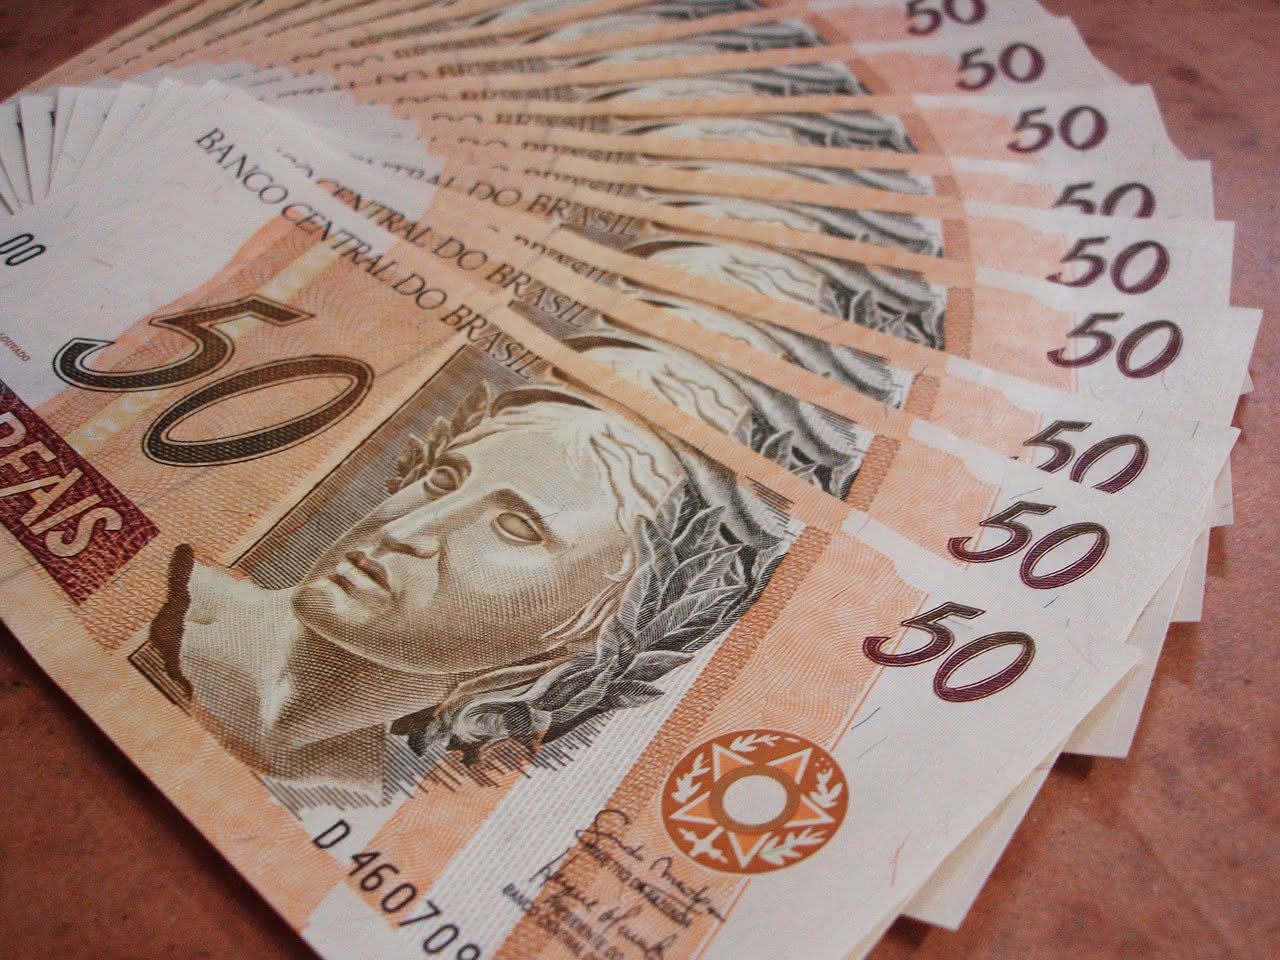 NOVO salário mínimo 2021 começa a valer a partir de AMANHÃ (01); confira o valor (Imagem: Reprodução/Pixabay)